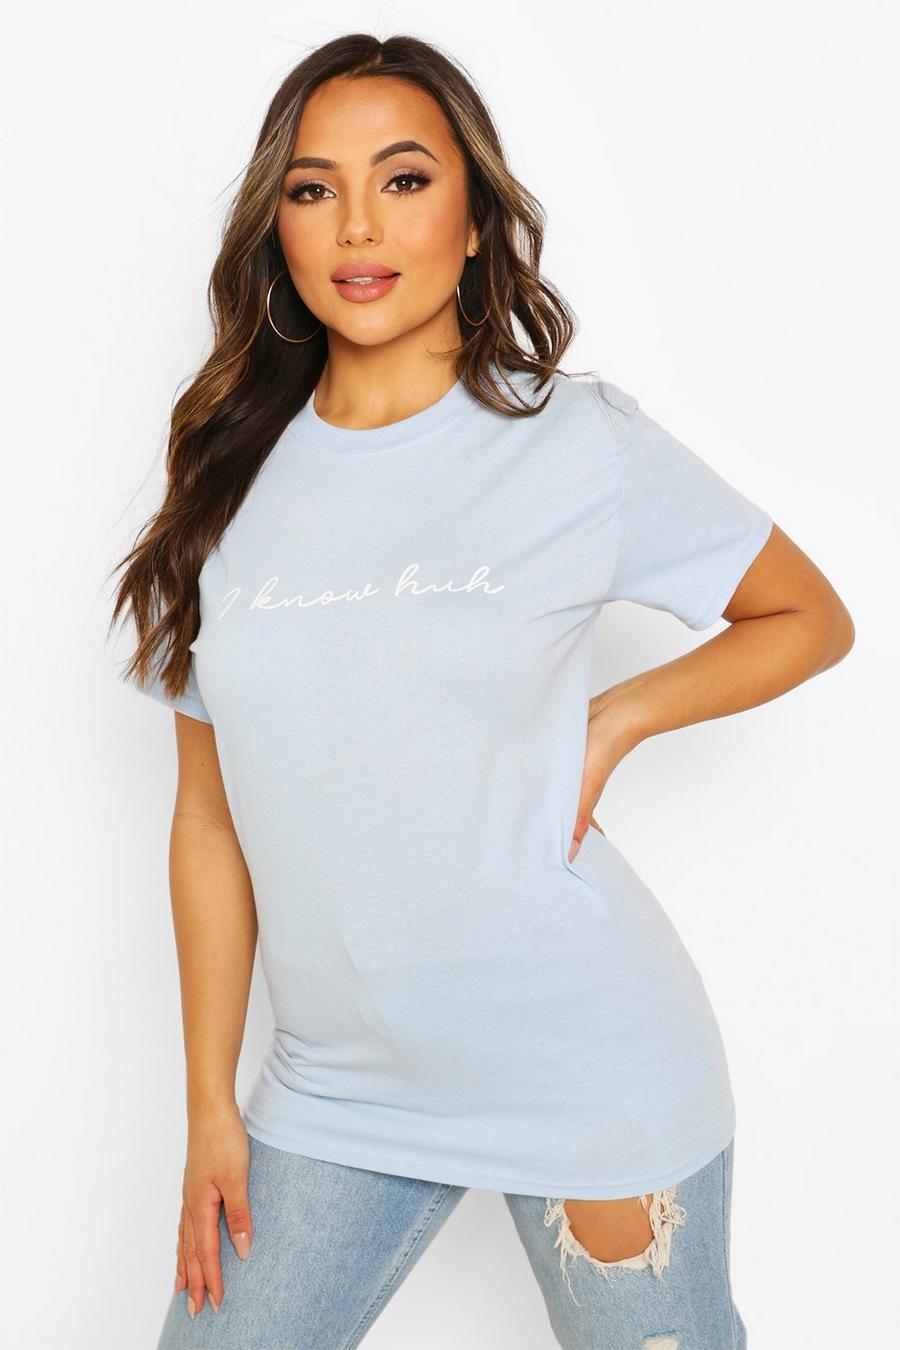 Camiseta con eslogan "I Know Huh" Petite, Azul claro image number 1